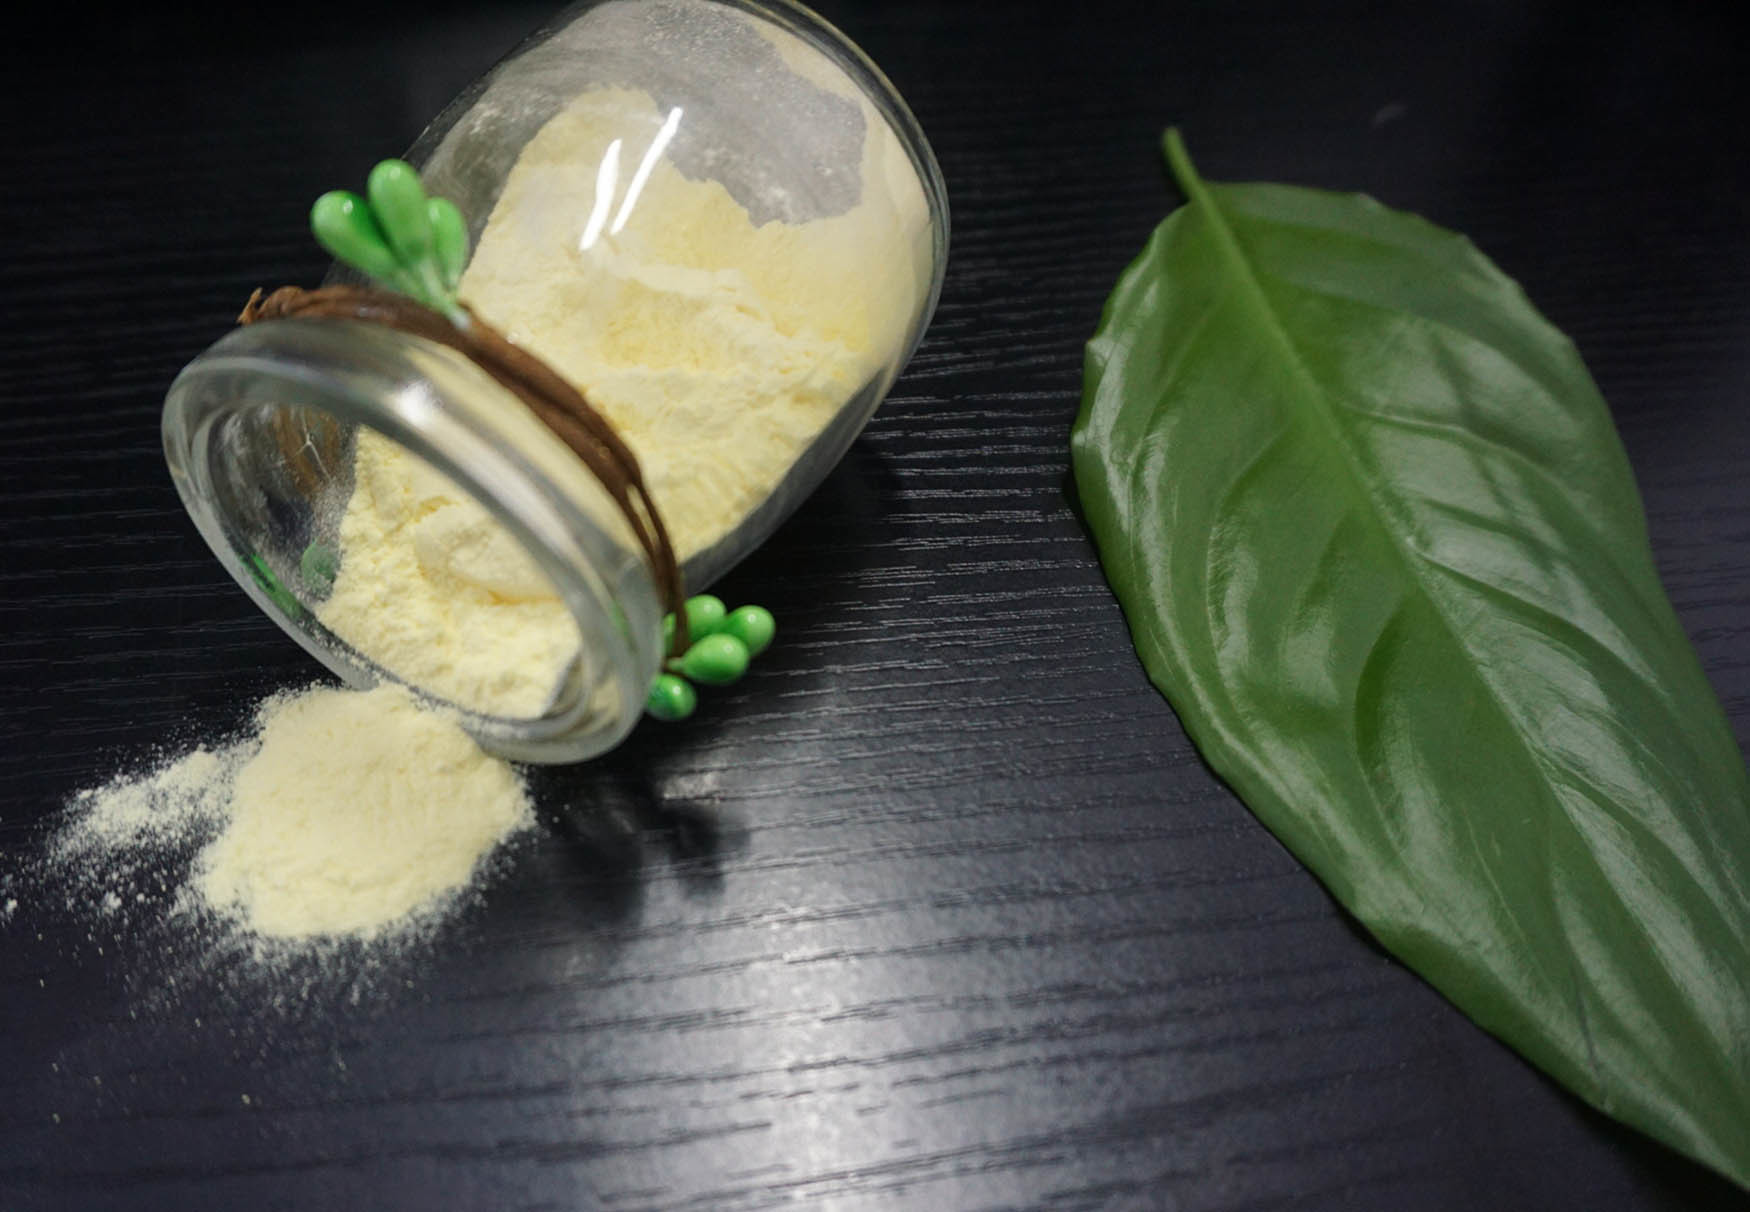 SGS Bộ đồ ăn Melamine bột khuôn A5 Vật liệu chống ăn mòn